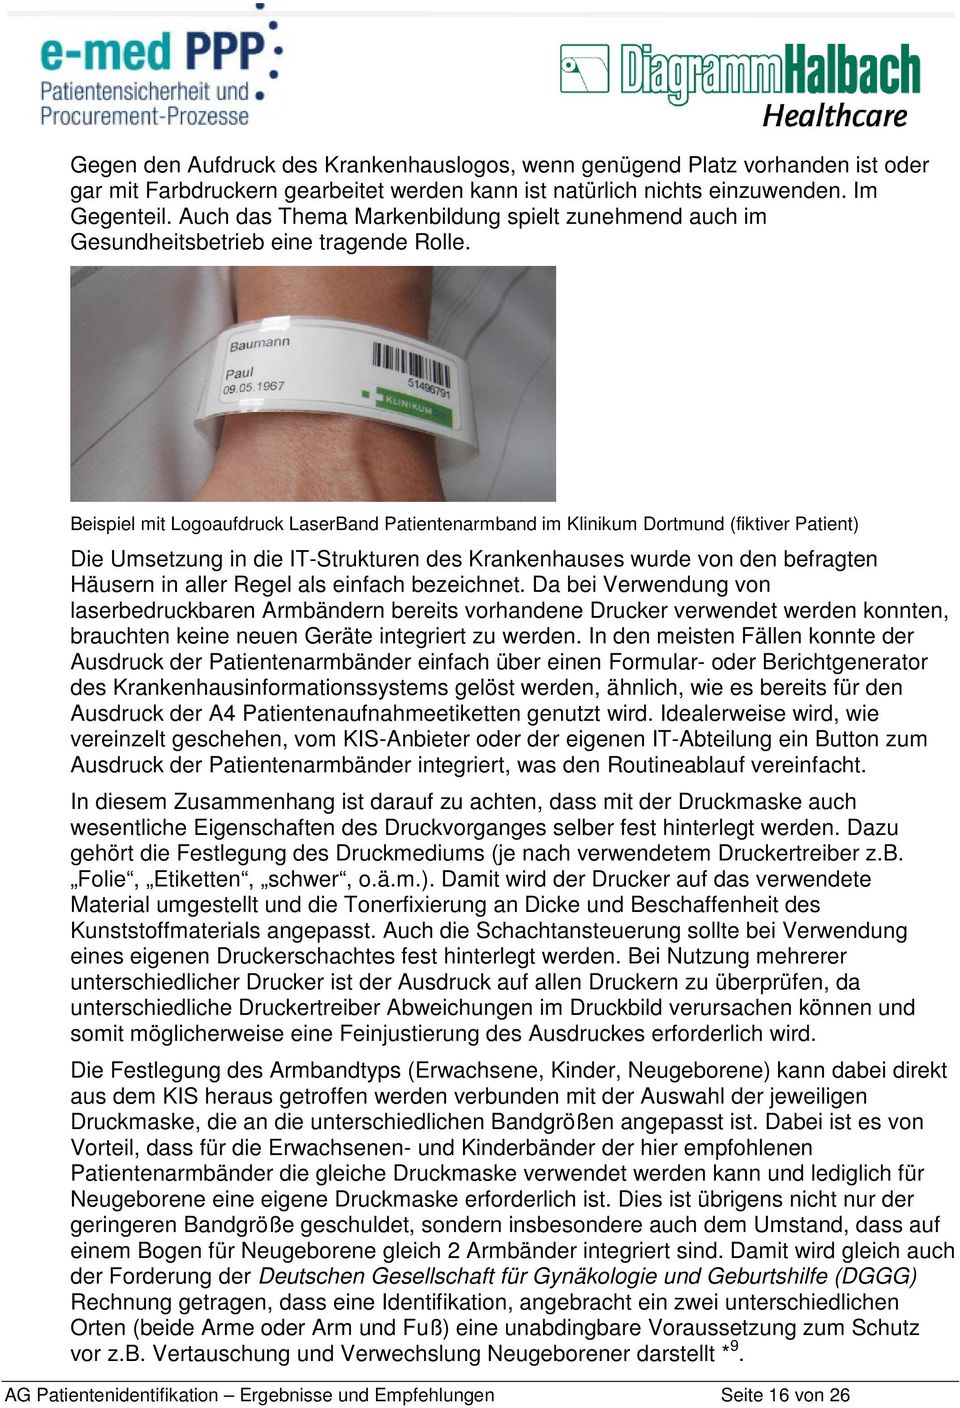 Beispiel mit Logoaufdruck LaserBand Patientenarmband im Klinikum Dortmund (fiktiver Patient) Die Umsetzung in die IT-Strukturen des Krankenhauses wurde von den befragten Häusern in aller Regel als